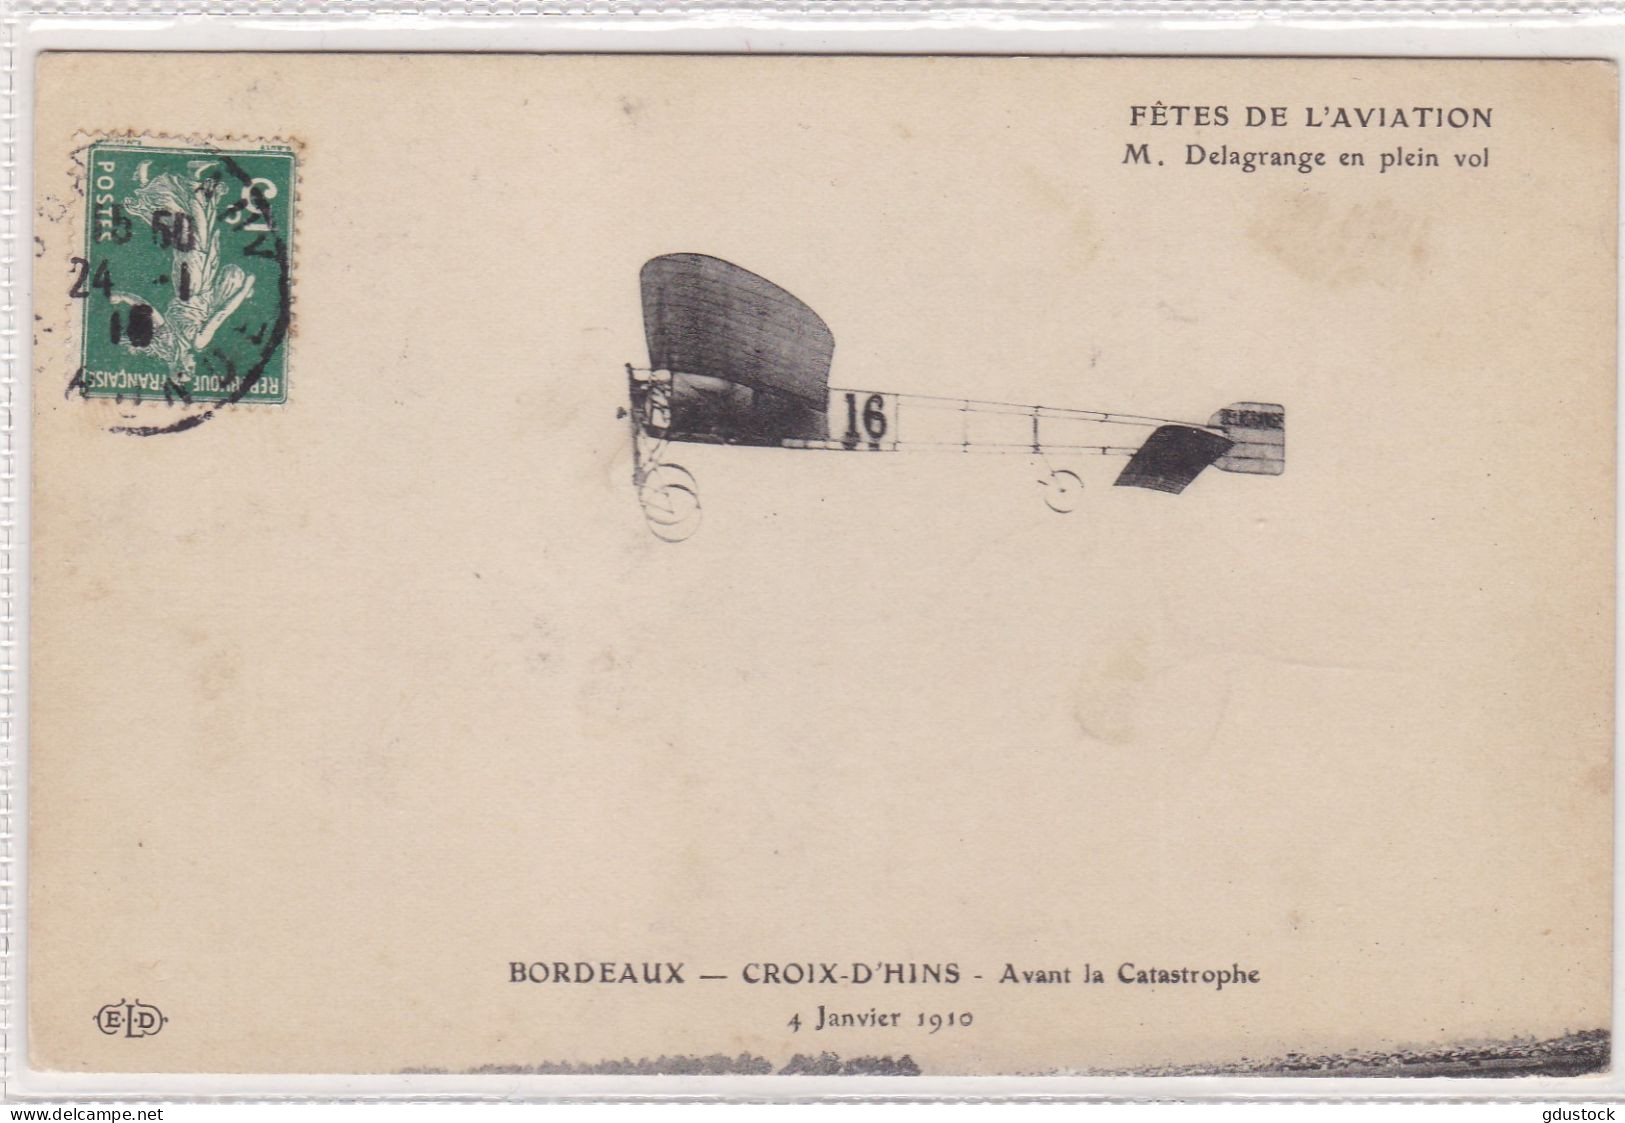 Fêtes De L'Aviation - M. Delagrange En Plein Vol - Bordeaux - Croix D'Hins - Avant La Catastrophe 4 Janvier 1910 - Aviateurs